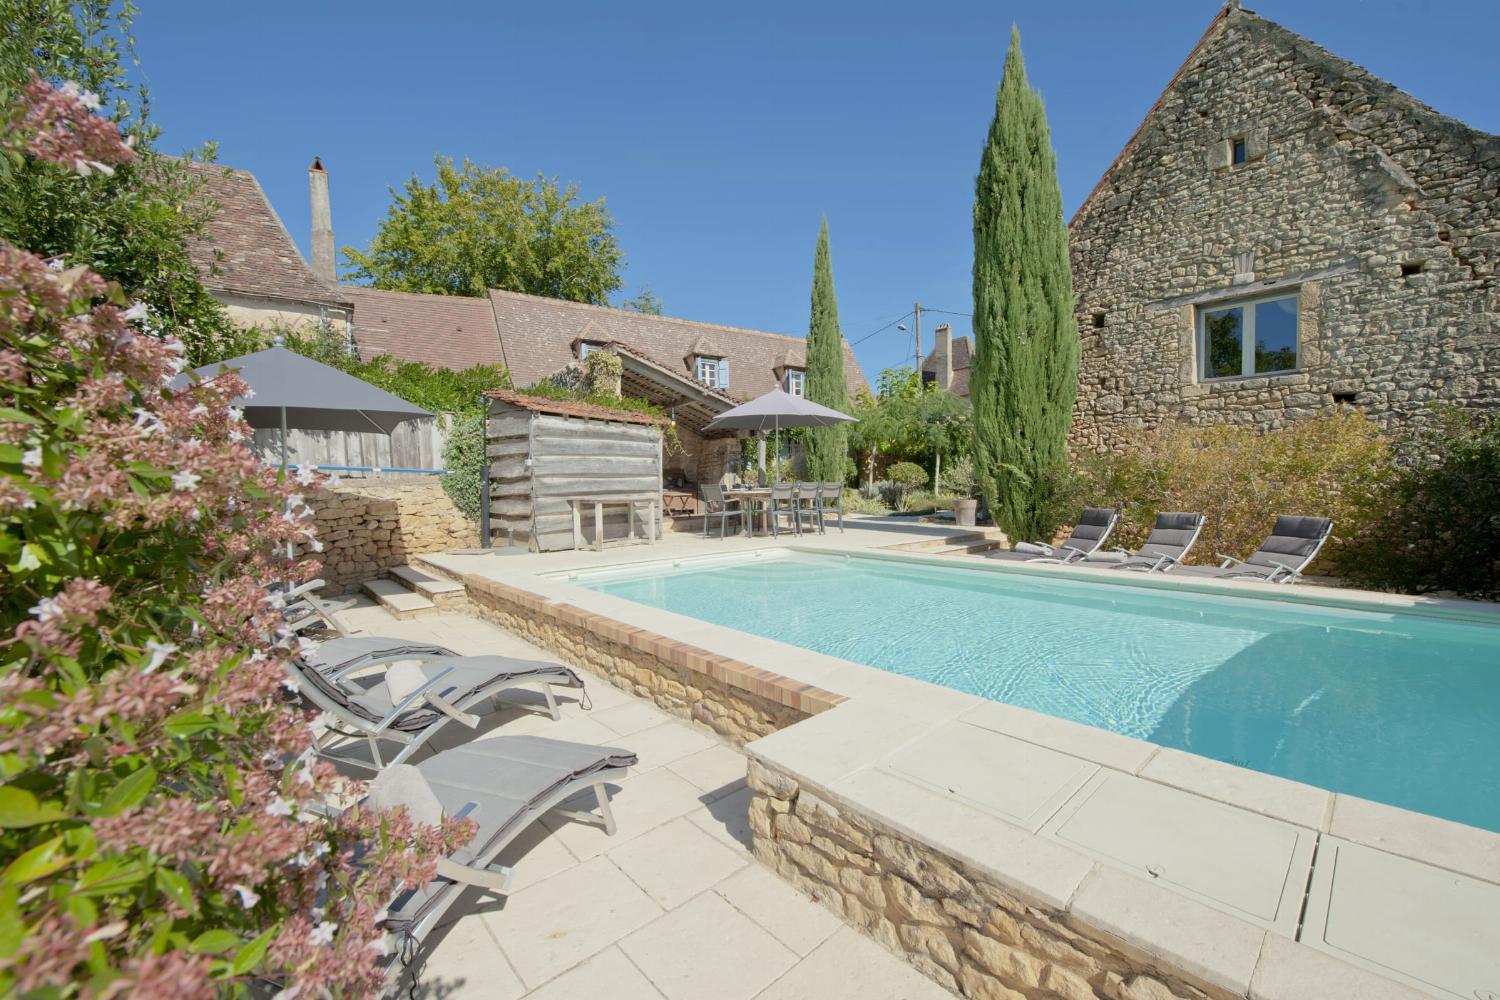 Location maison en Dordogne avec piscine privée